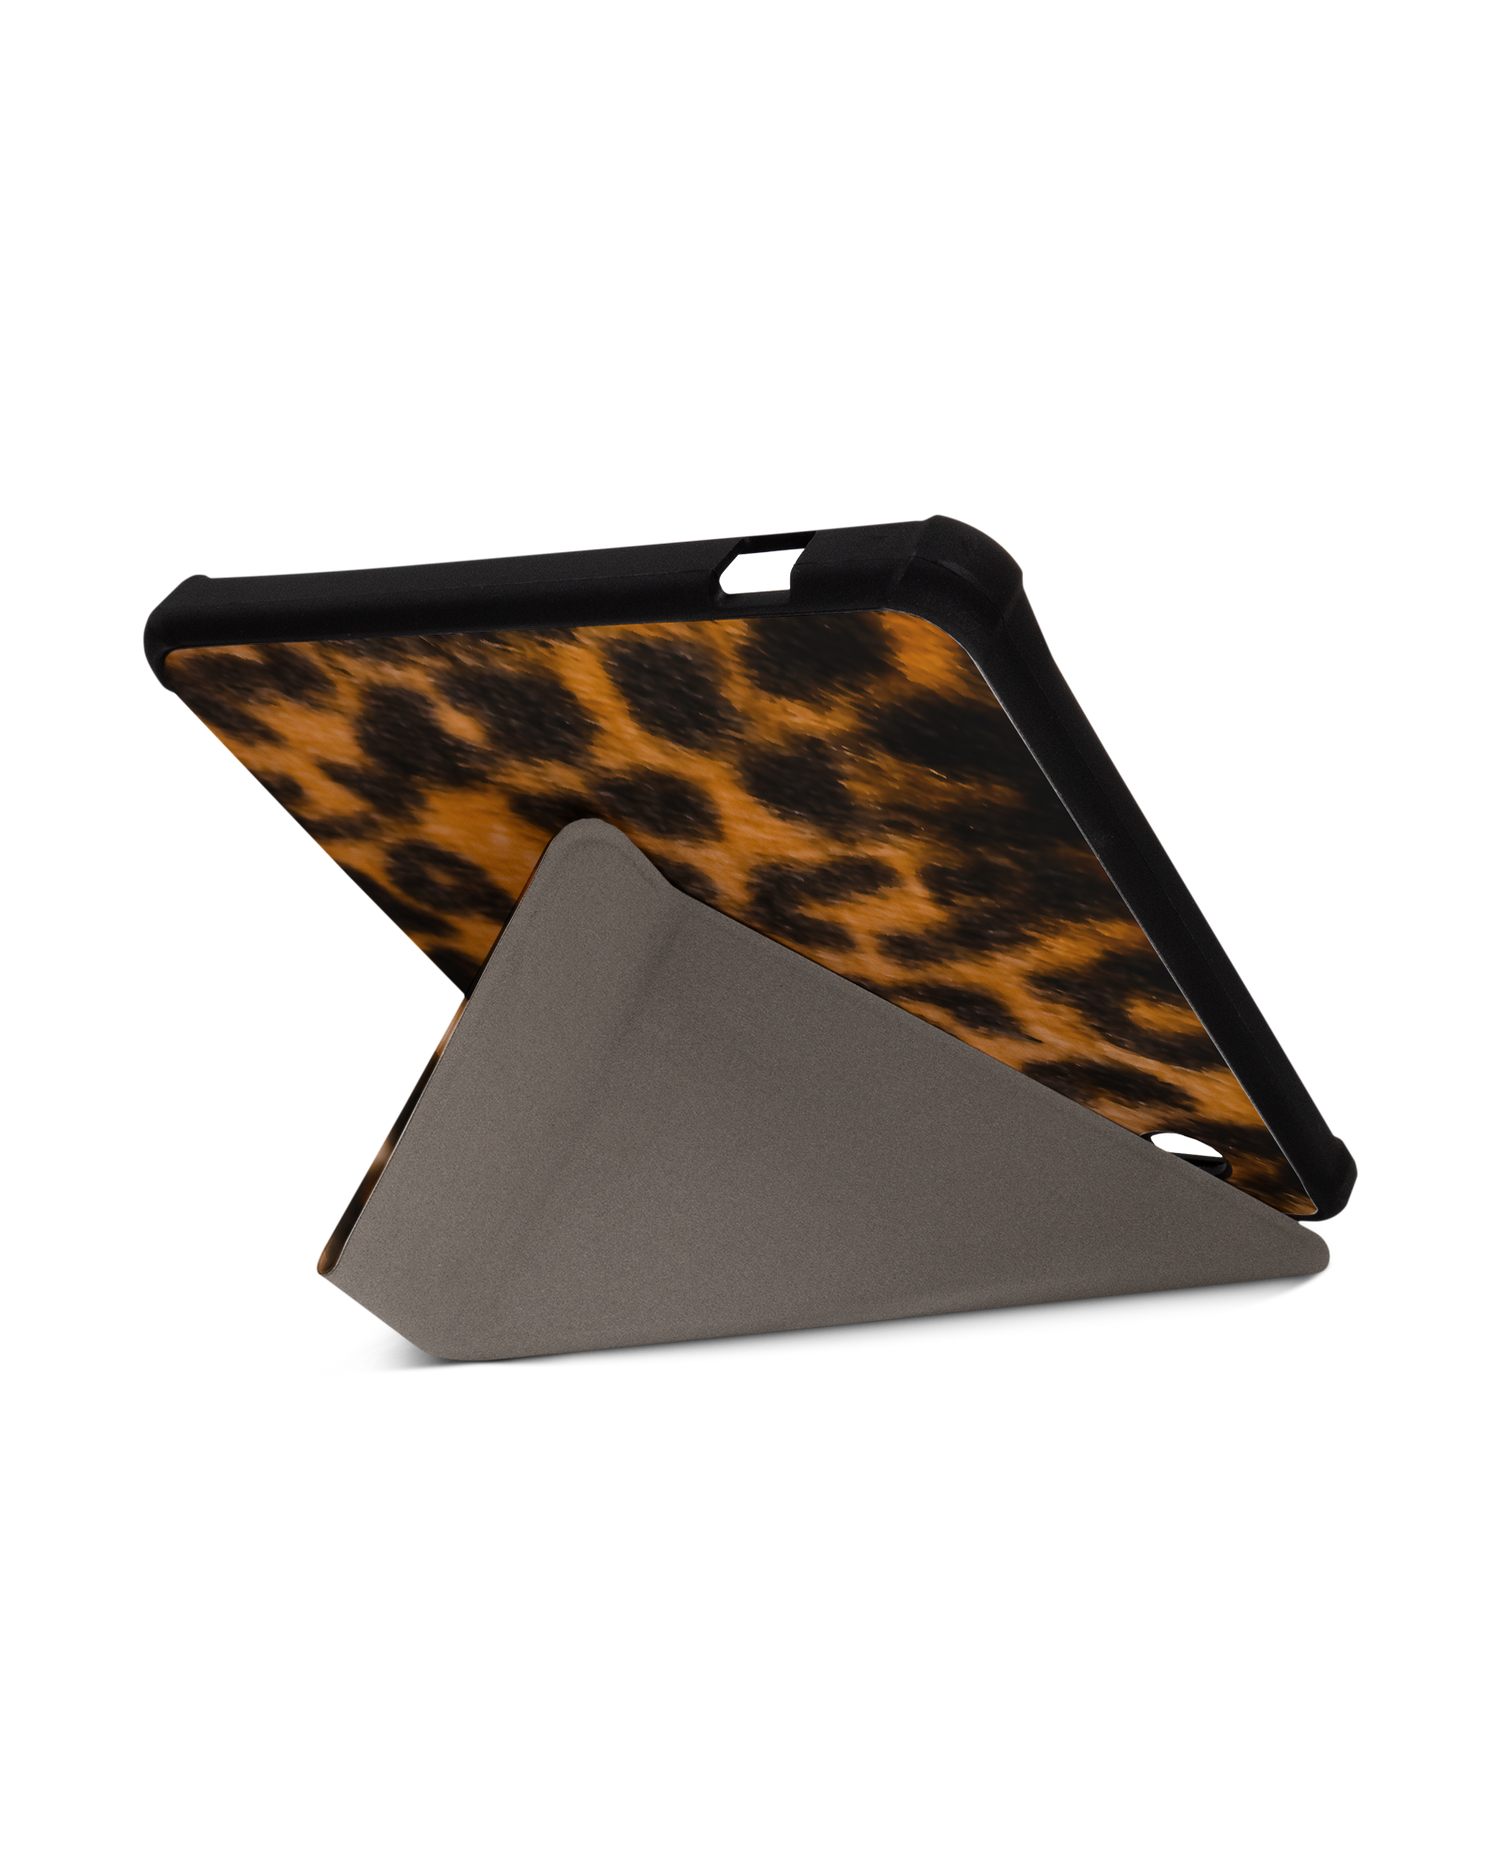 Leopard Pattern eBook-Reader Smart Case für tolino vision 5 (2019): Aufgestellt im Querformat